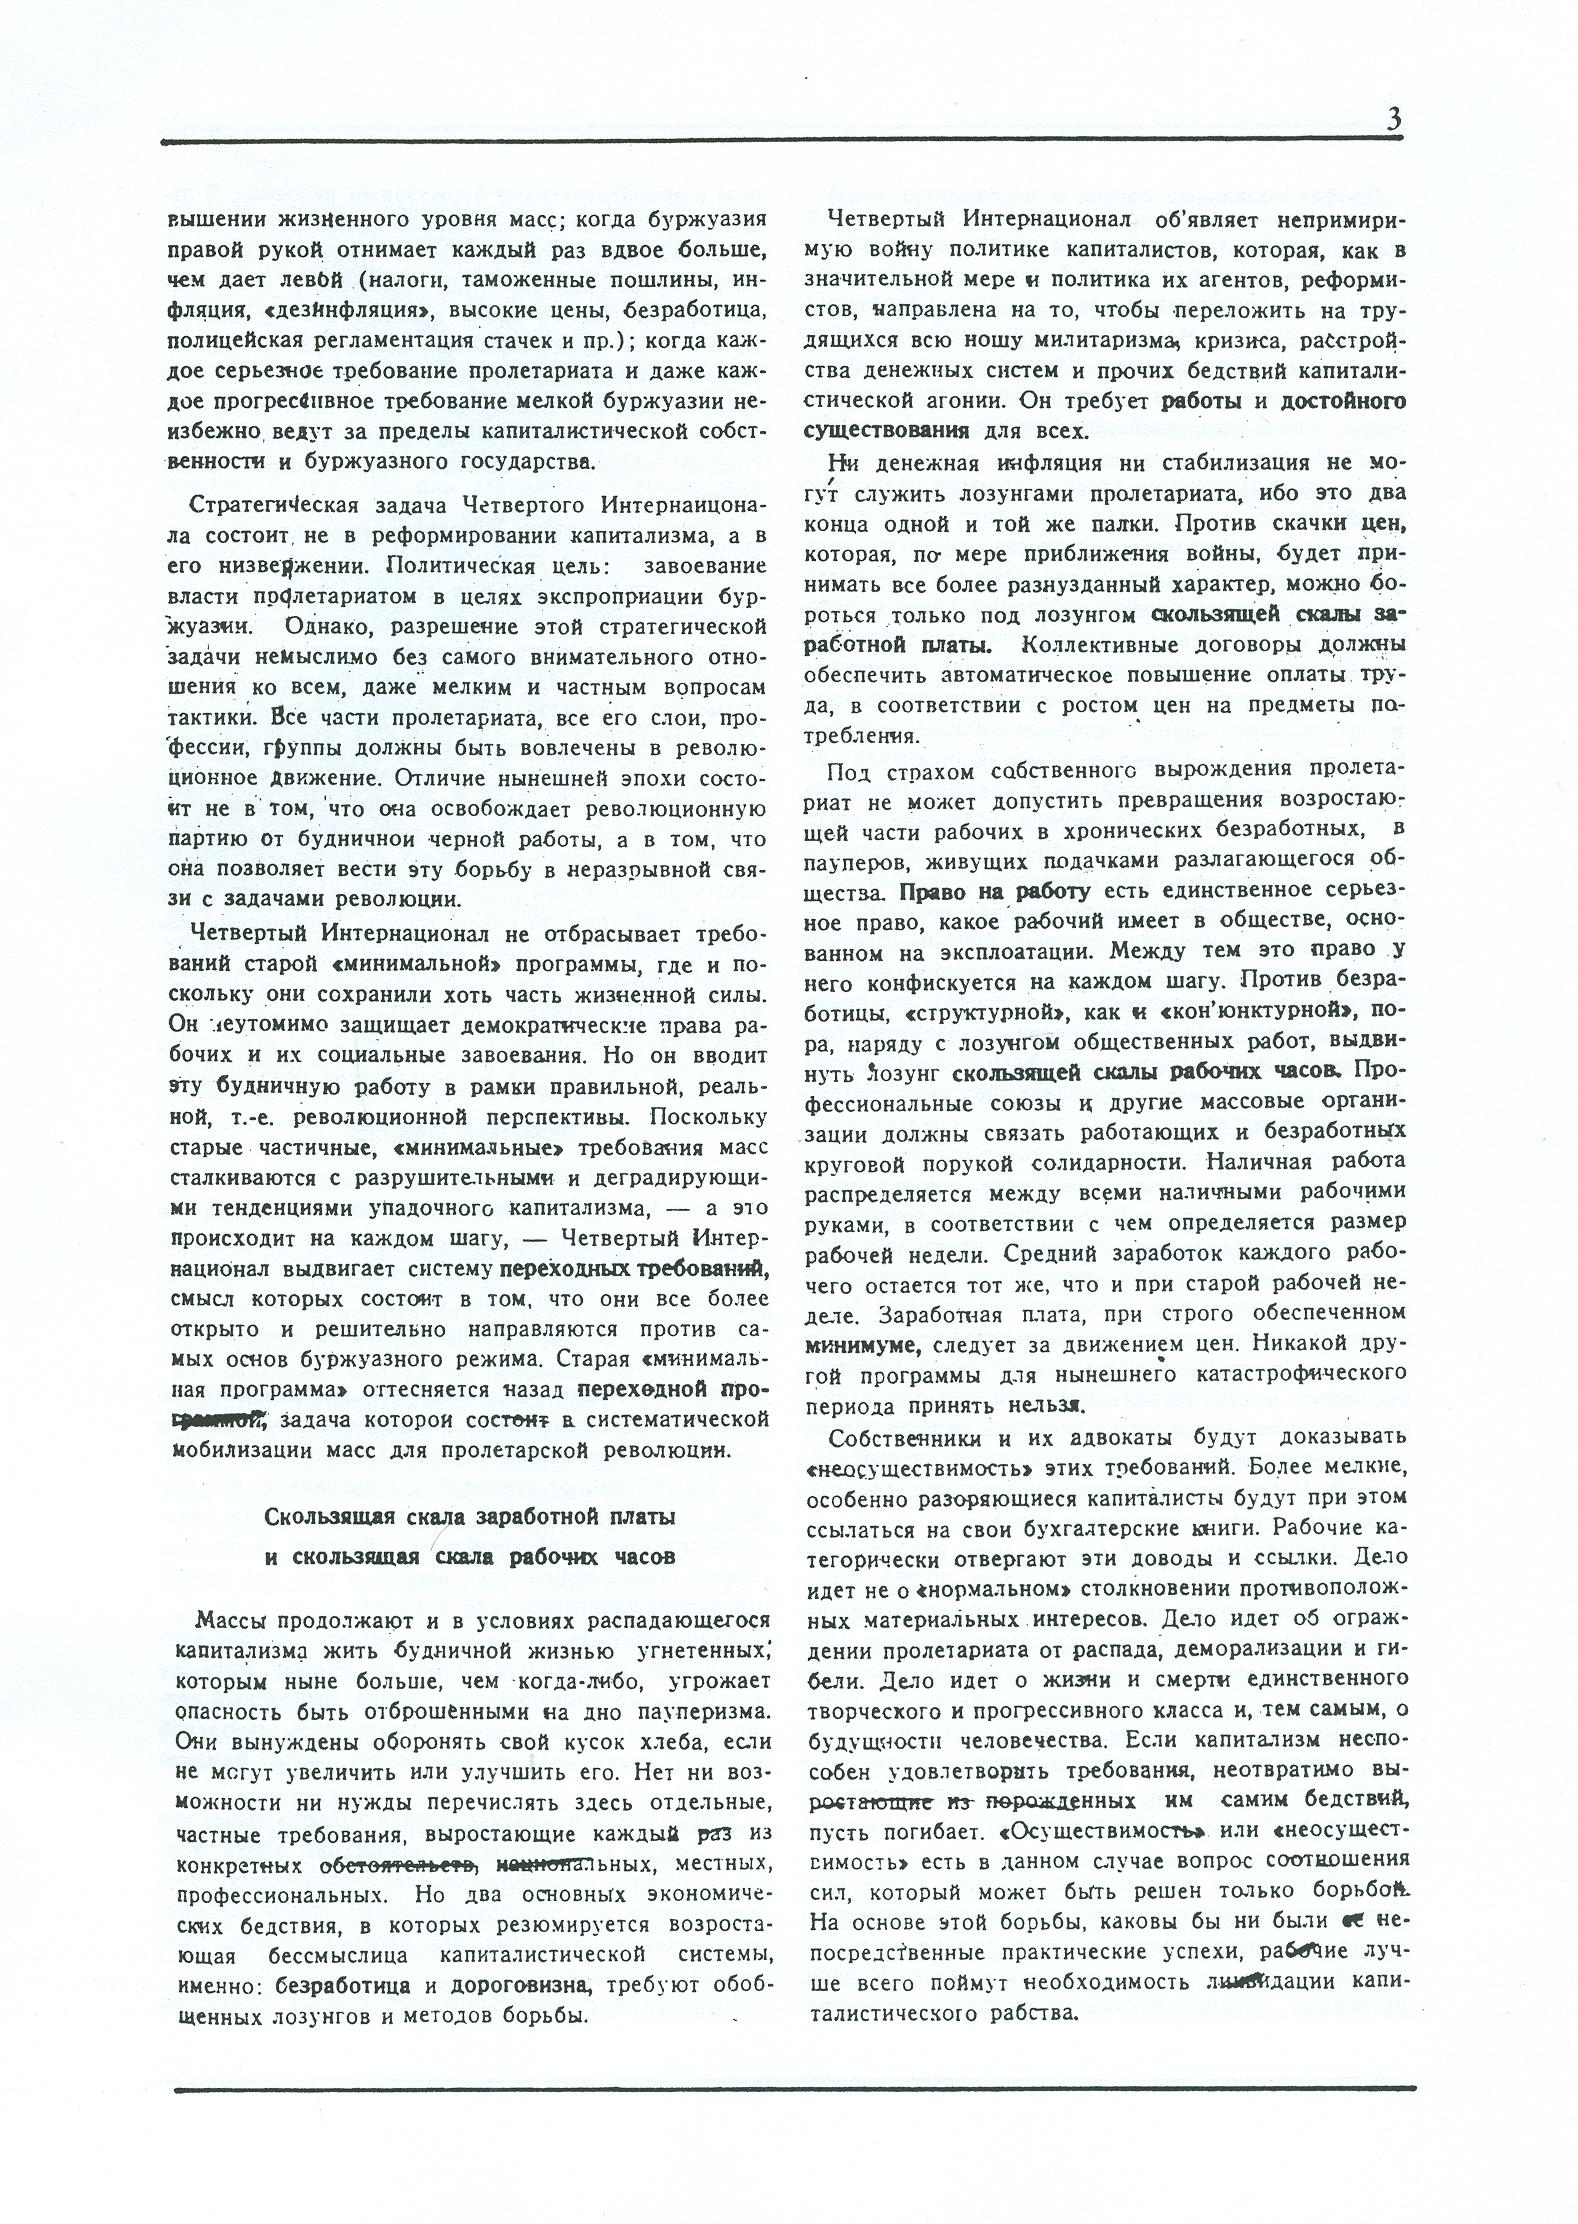 Dagli archivi del bolscevismo n. 1 (marzo 1986) - pag. 3